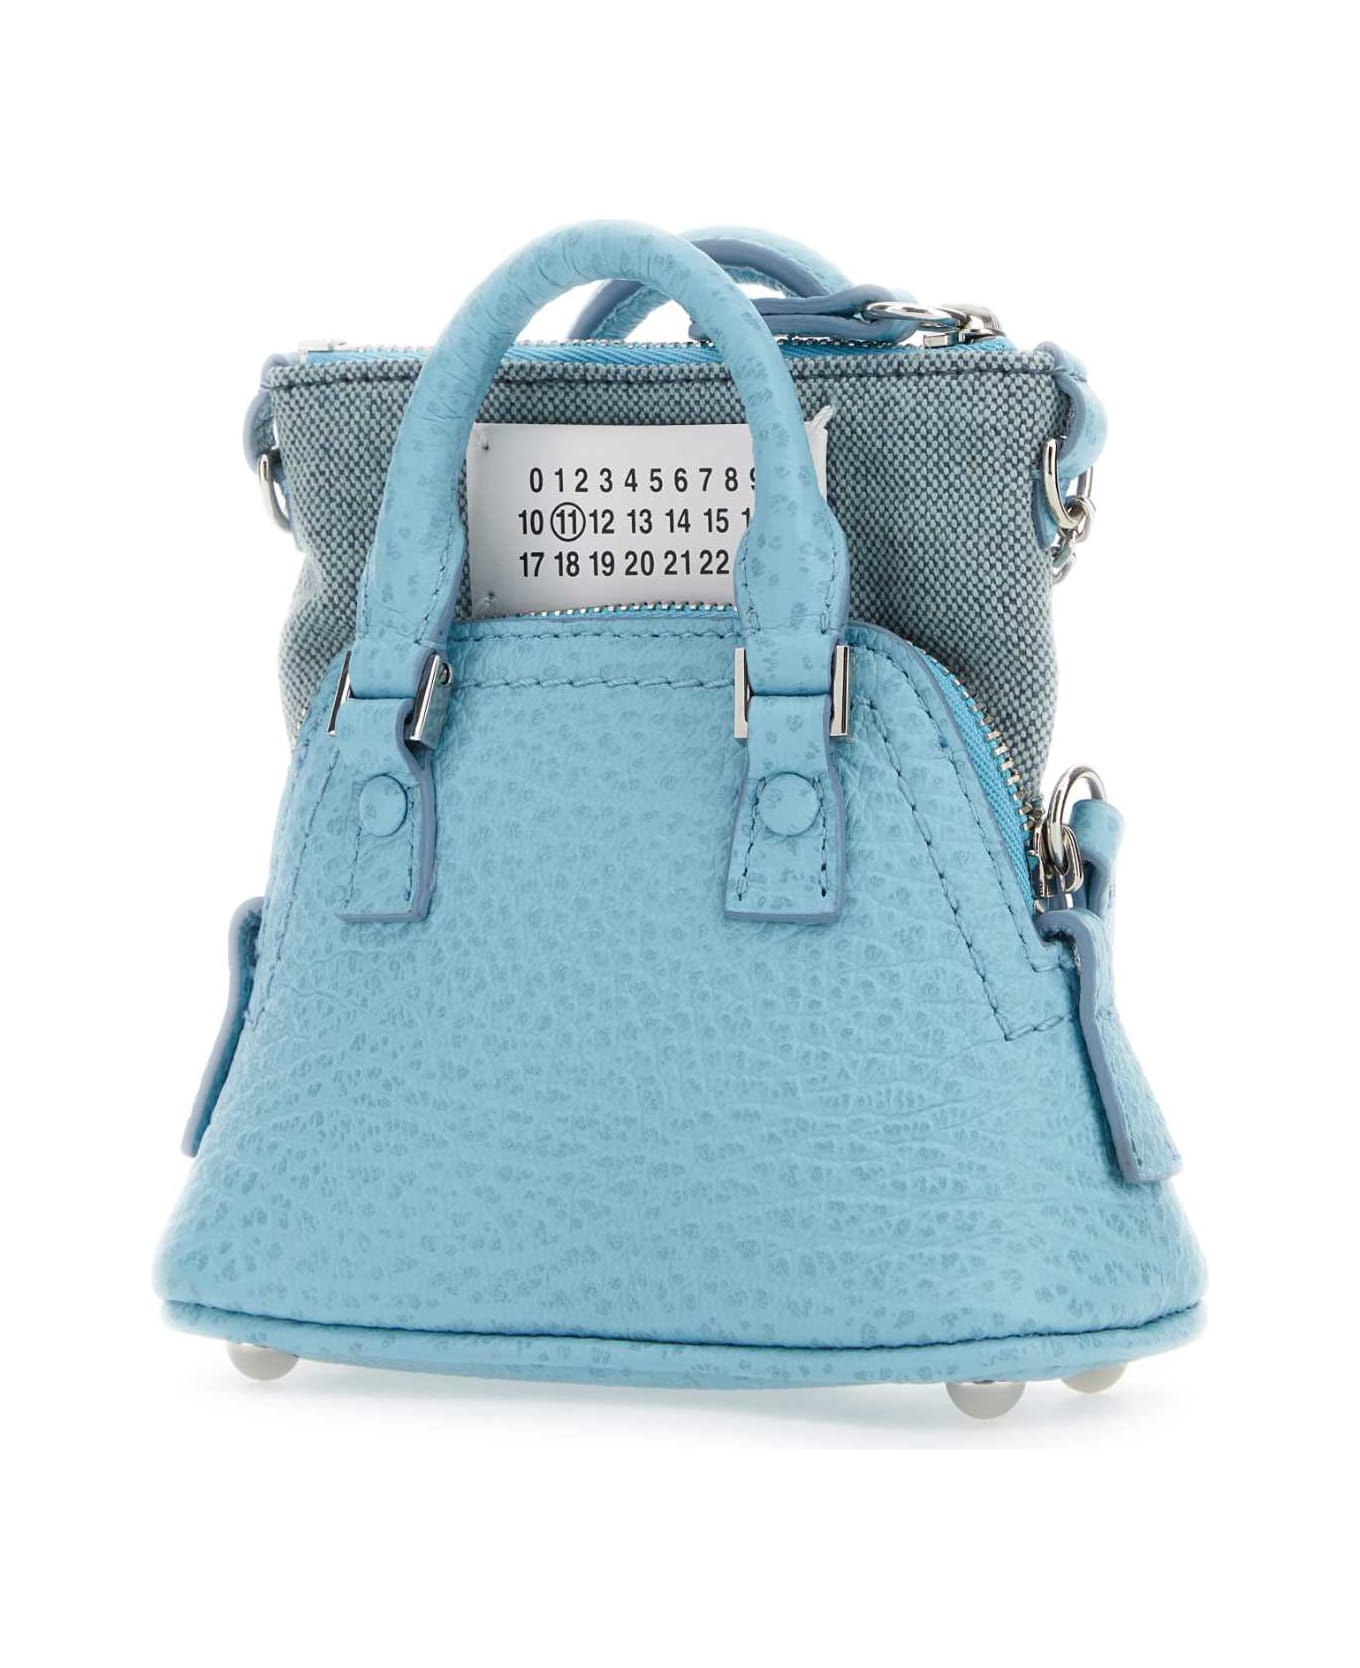 Maison Margiela Light Blue Leather And Fabric 5ac Classique Baby Handbag - AQUA トートバッグ